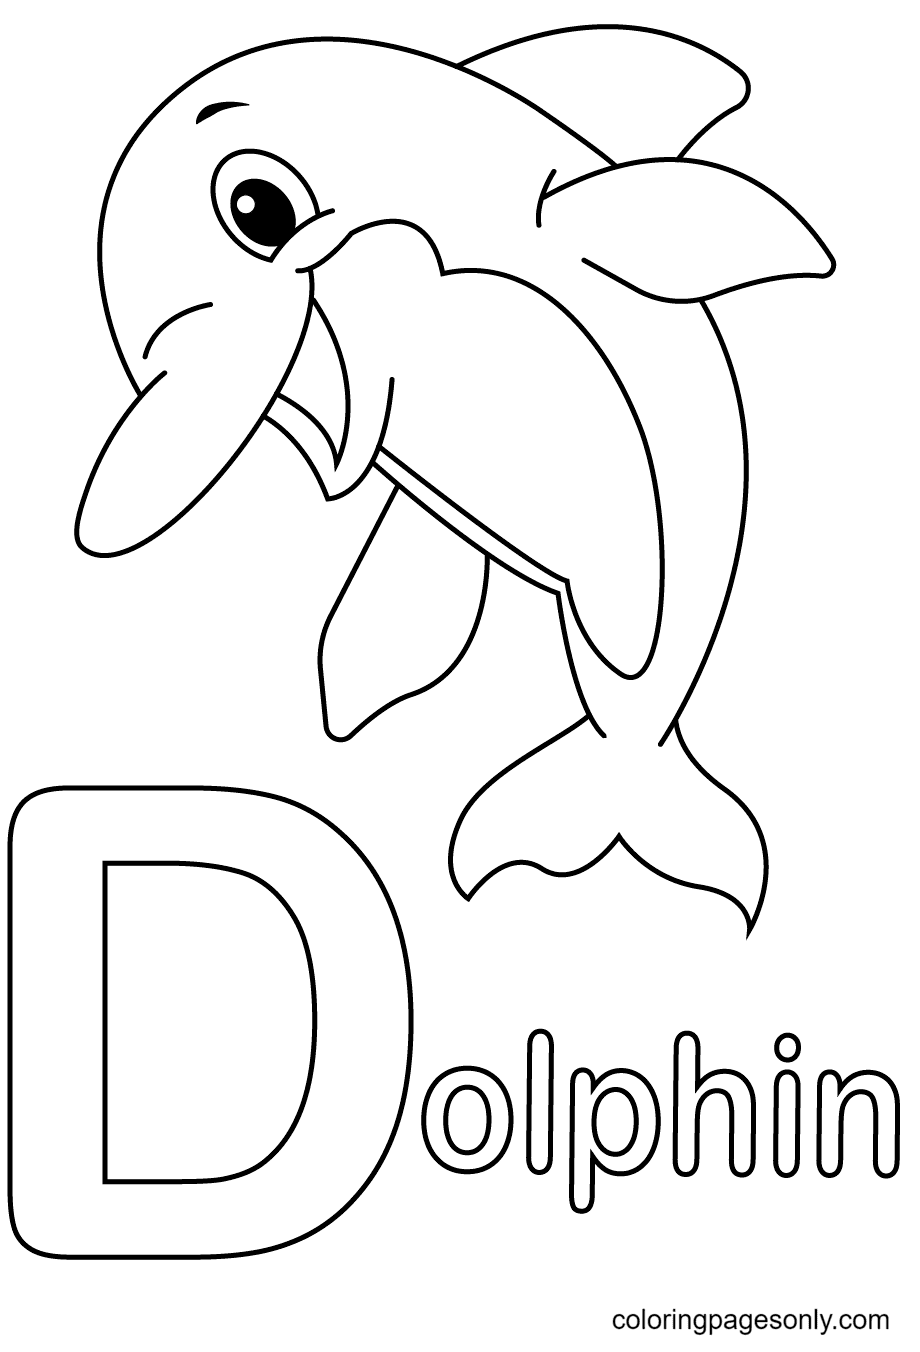 Buchstabe D steht für Delphin aus Buchstabe D